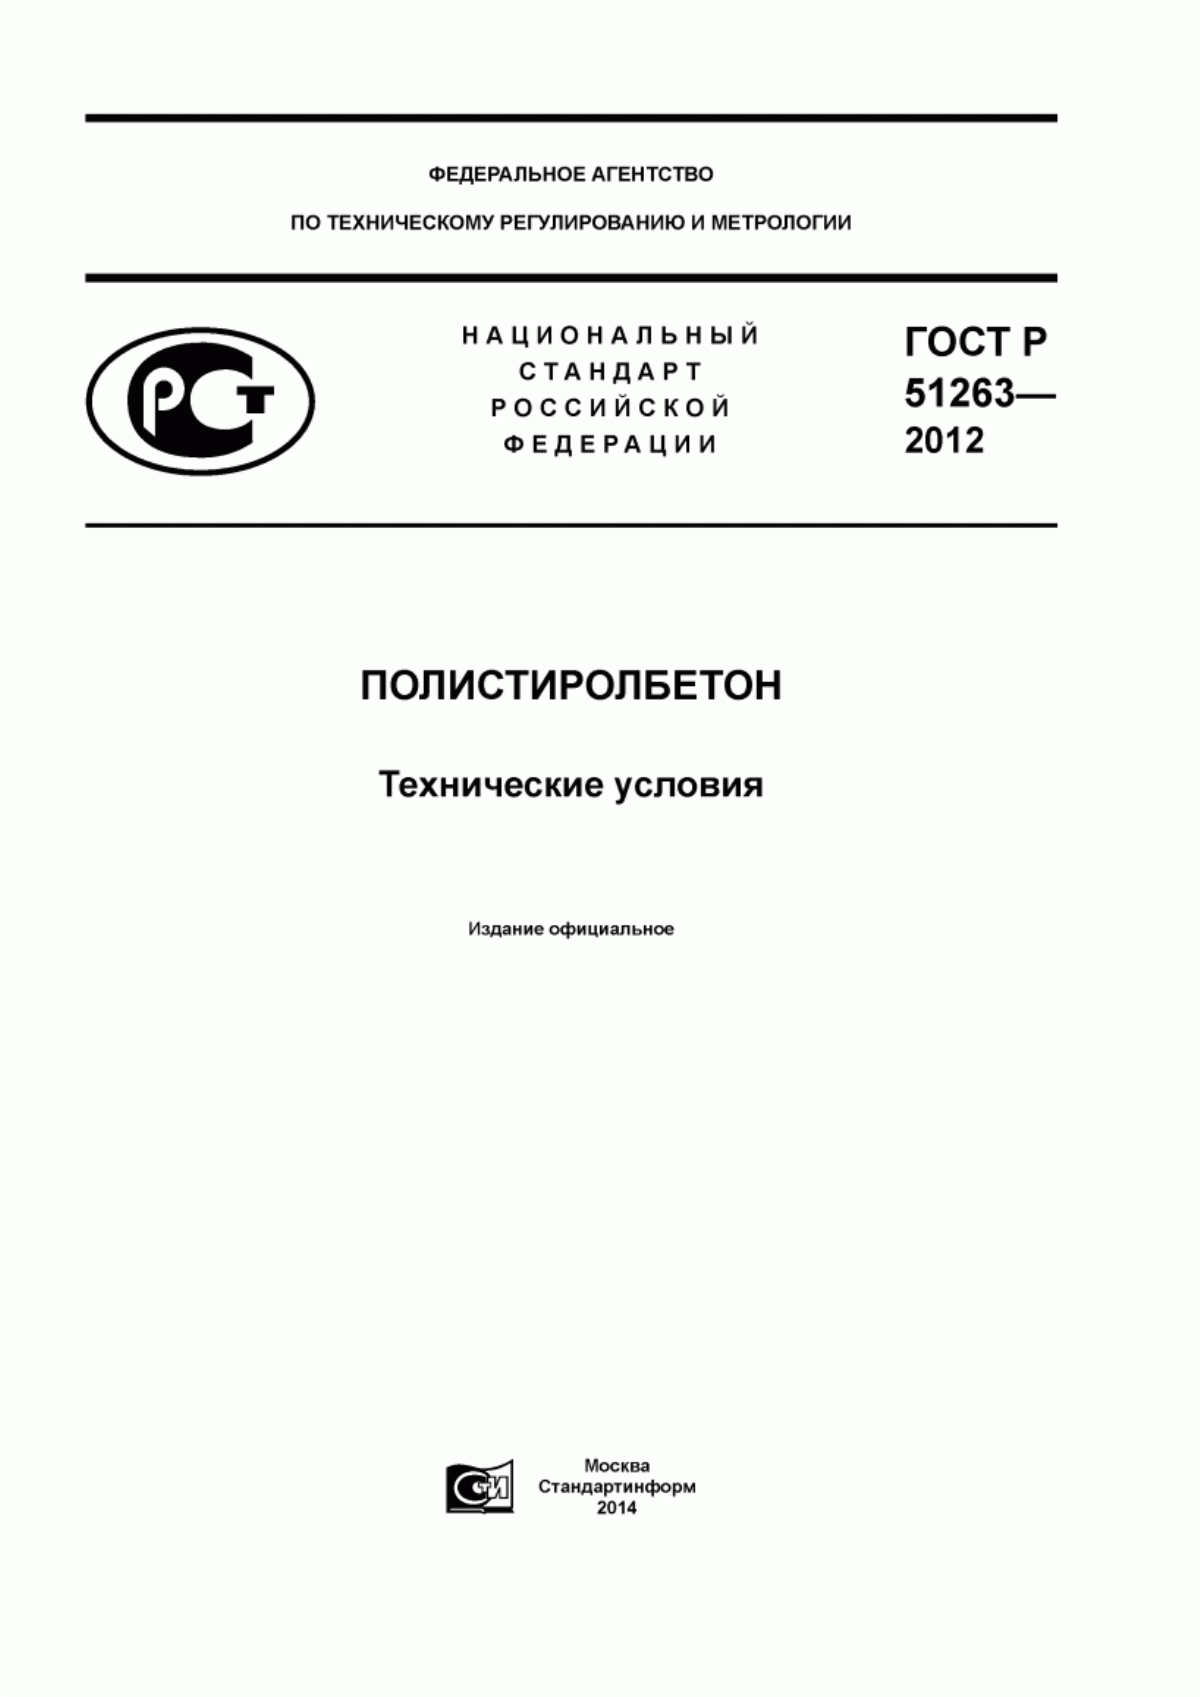 ГОСТ Р 51263-2012 Полистиролбетон. Технические условия